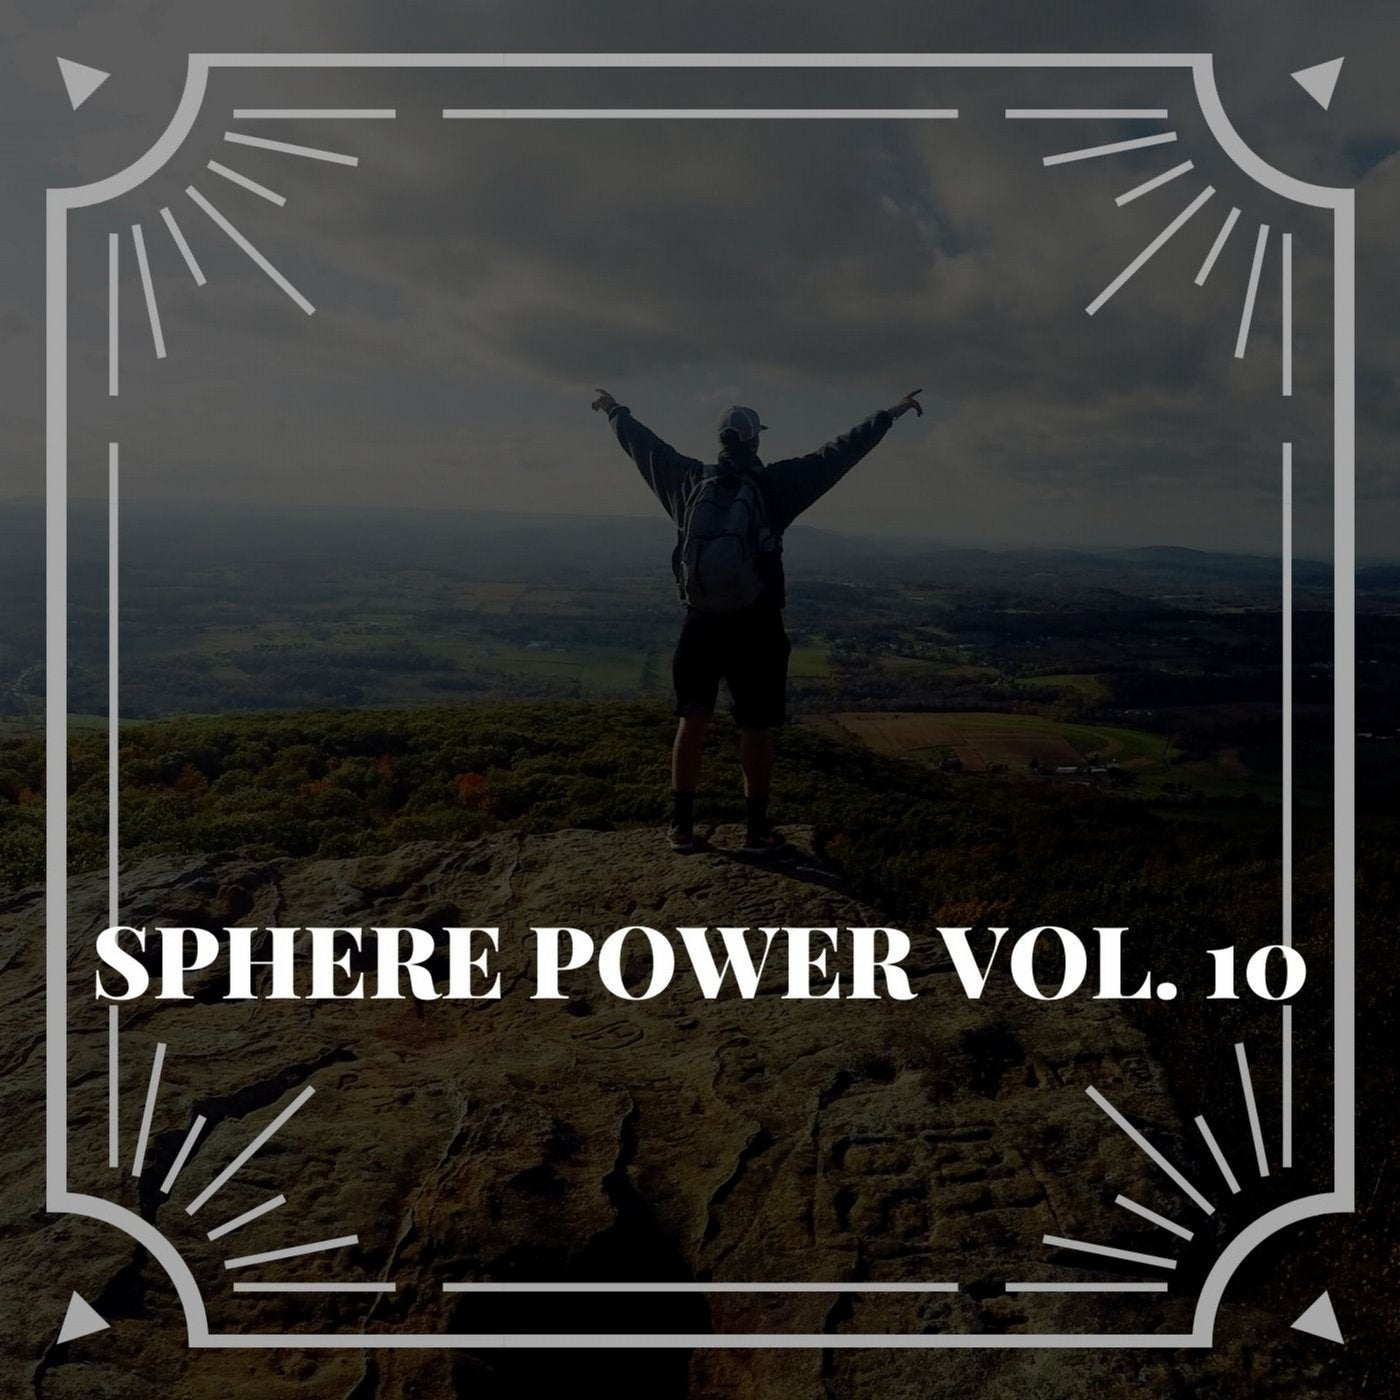 Sphere Power Vol. 10